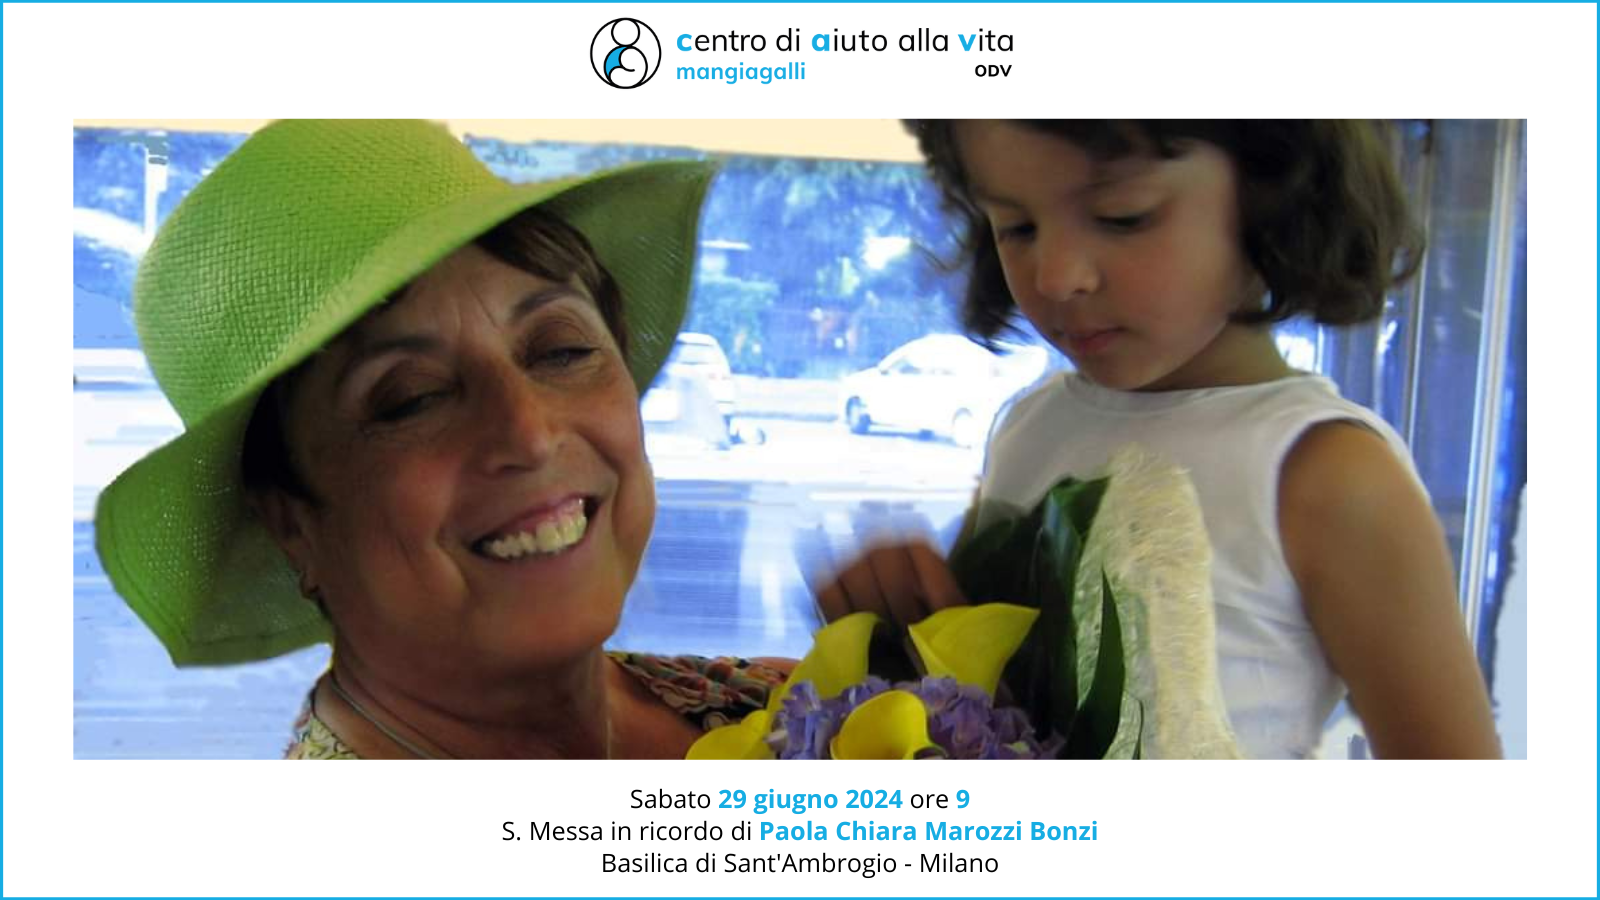 Milano: Messa in ricordo di Paola Bonzi, fondatrice del Cav Mangiagalli